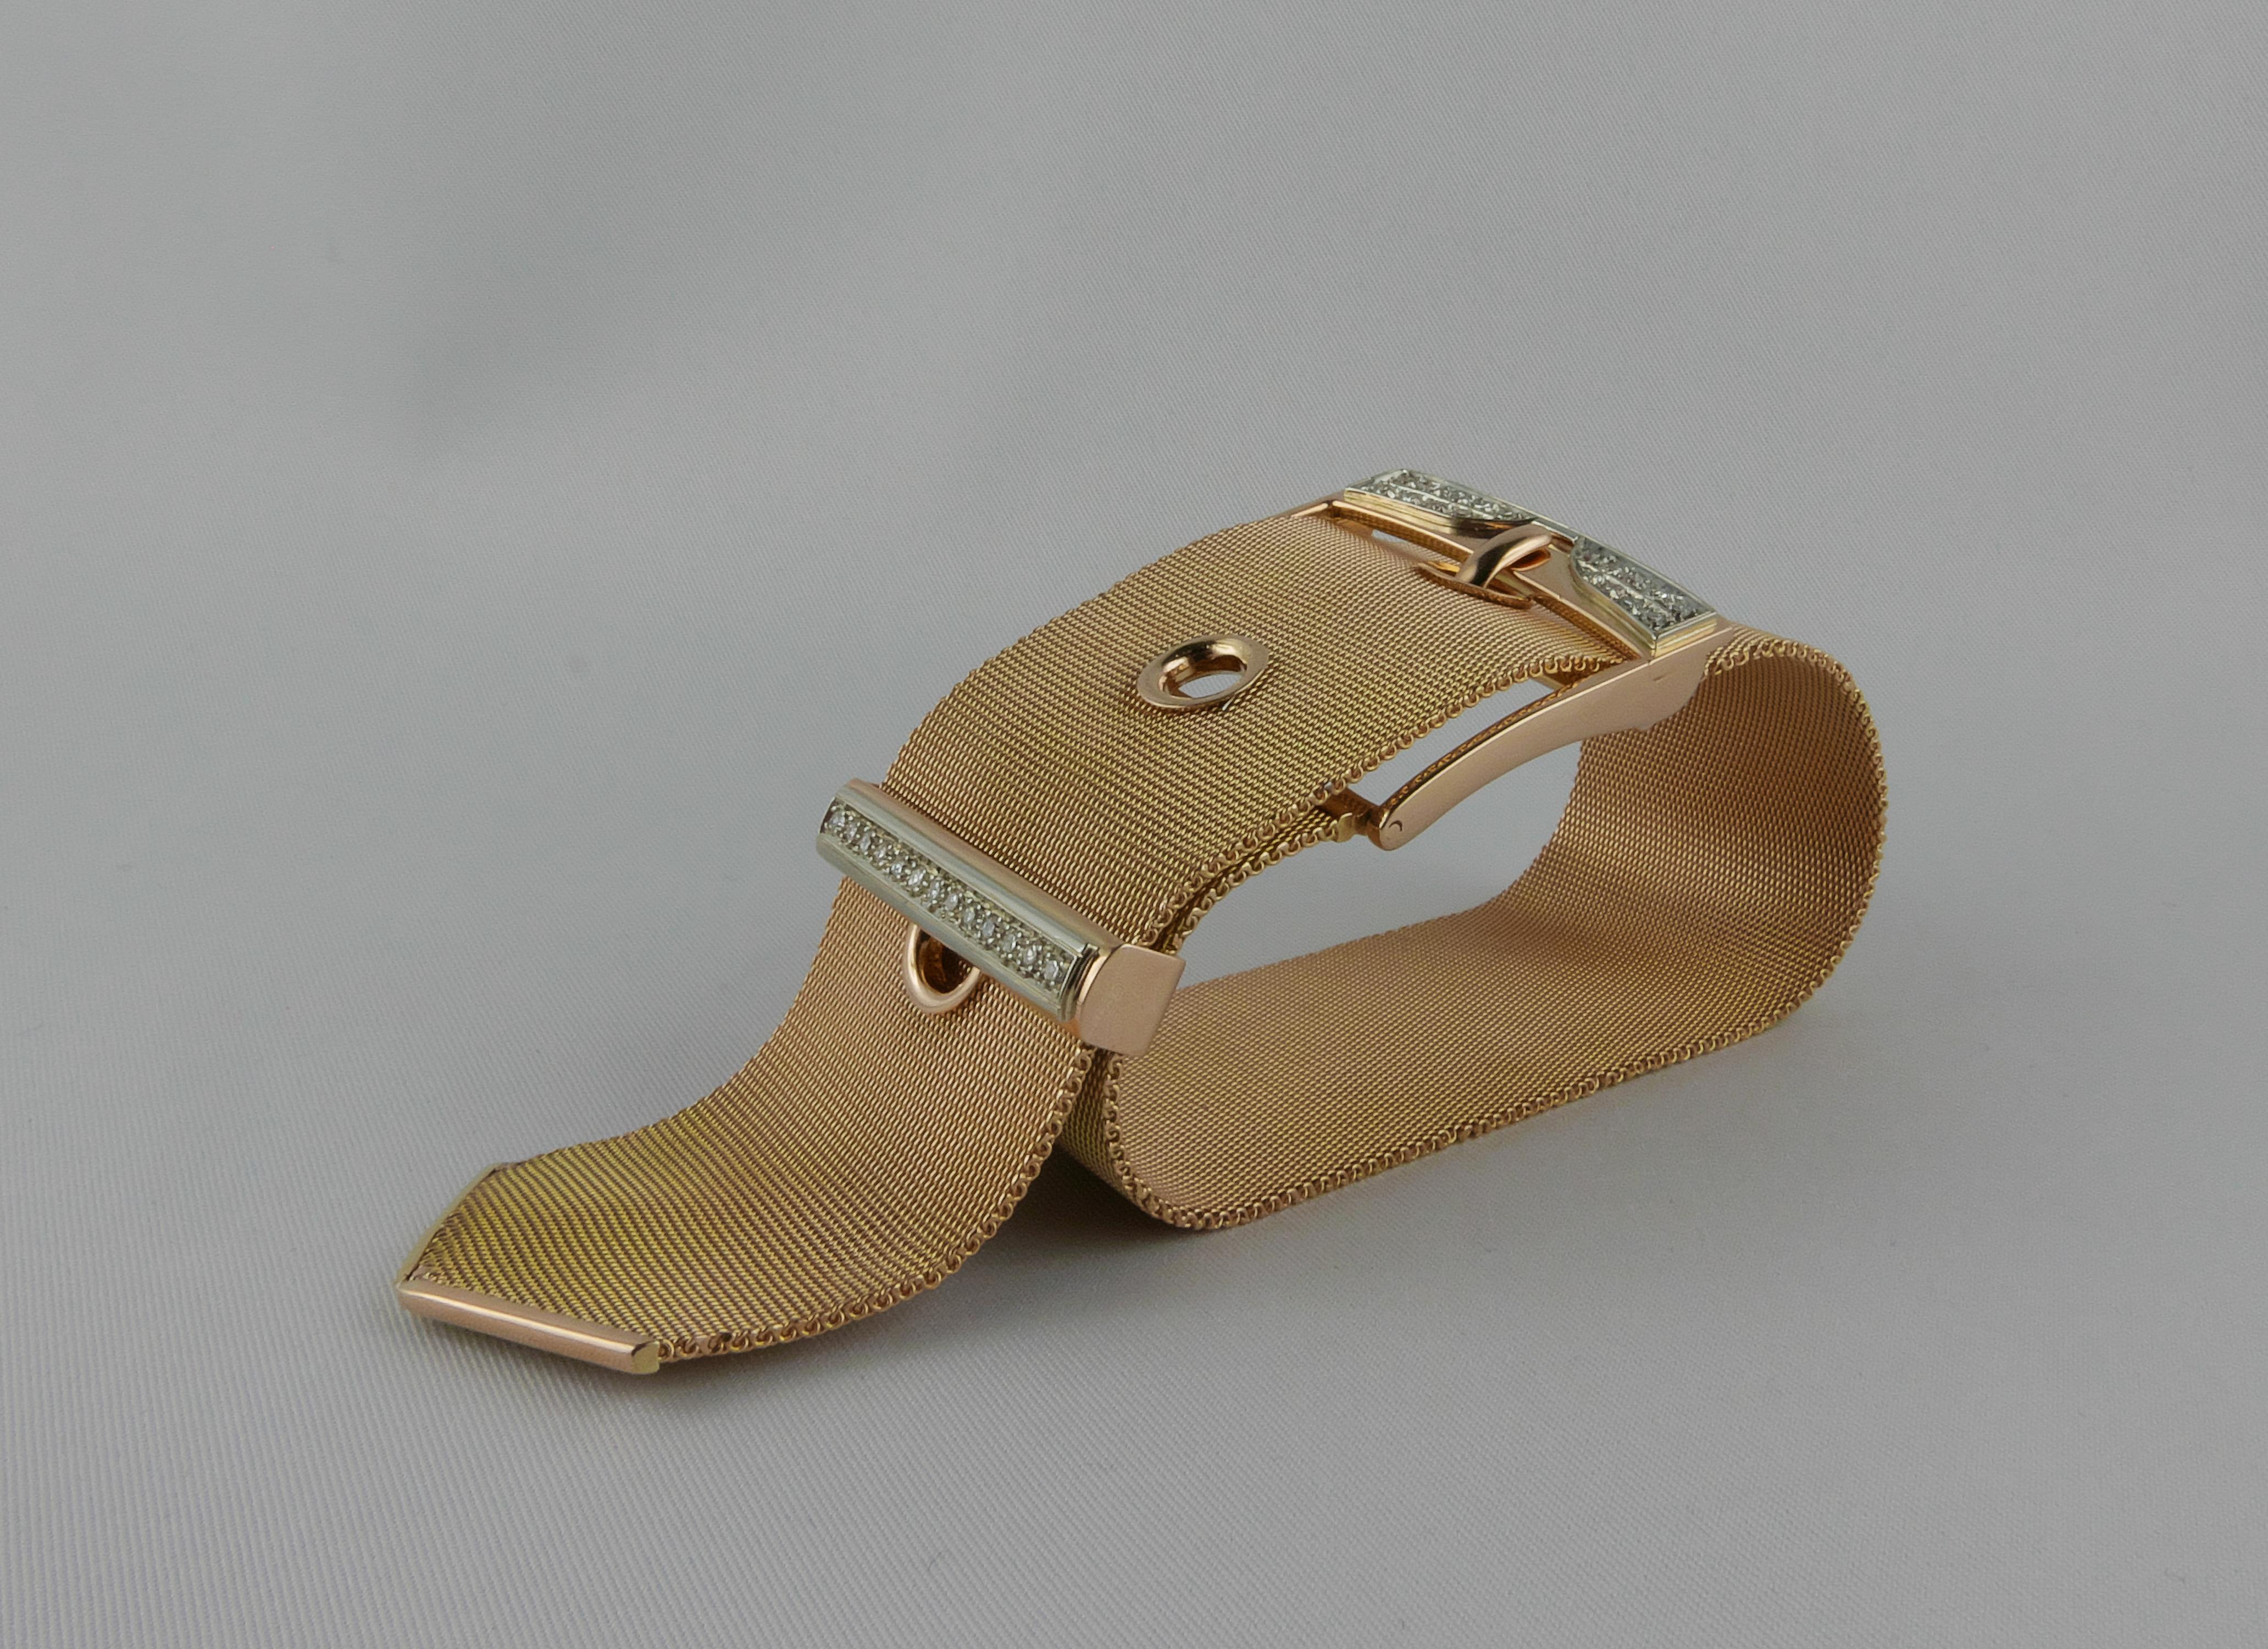 Extrêmement élégant et stylé bracelet italien des années 1950 à boucle en diamants en maille jaune 18 carats  L'or.  Chaîne tissée large et flexible avec grande boucle à ardillon  illuminé d'une simple et d'une double rangée de diamants de taille